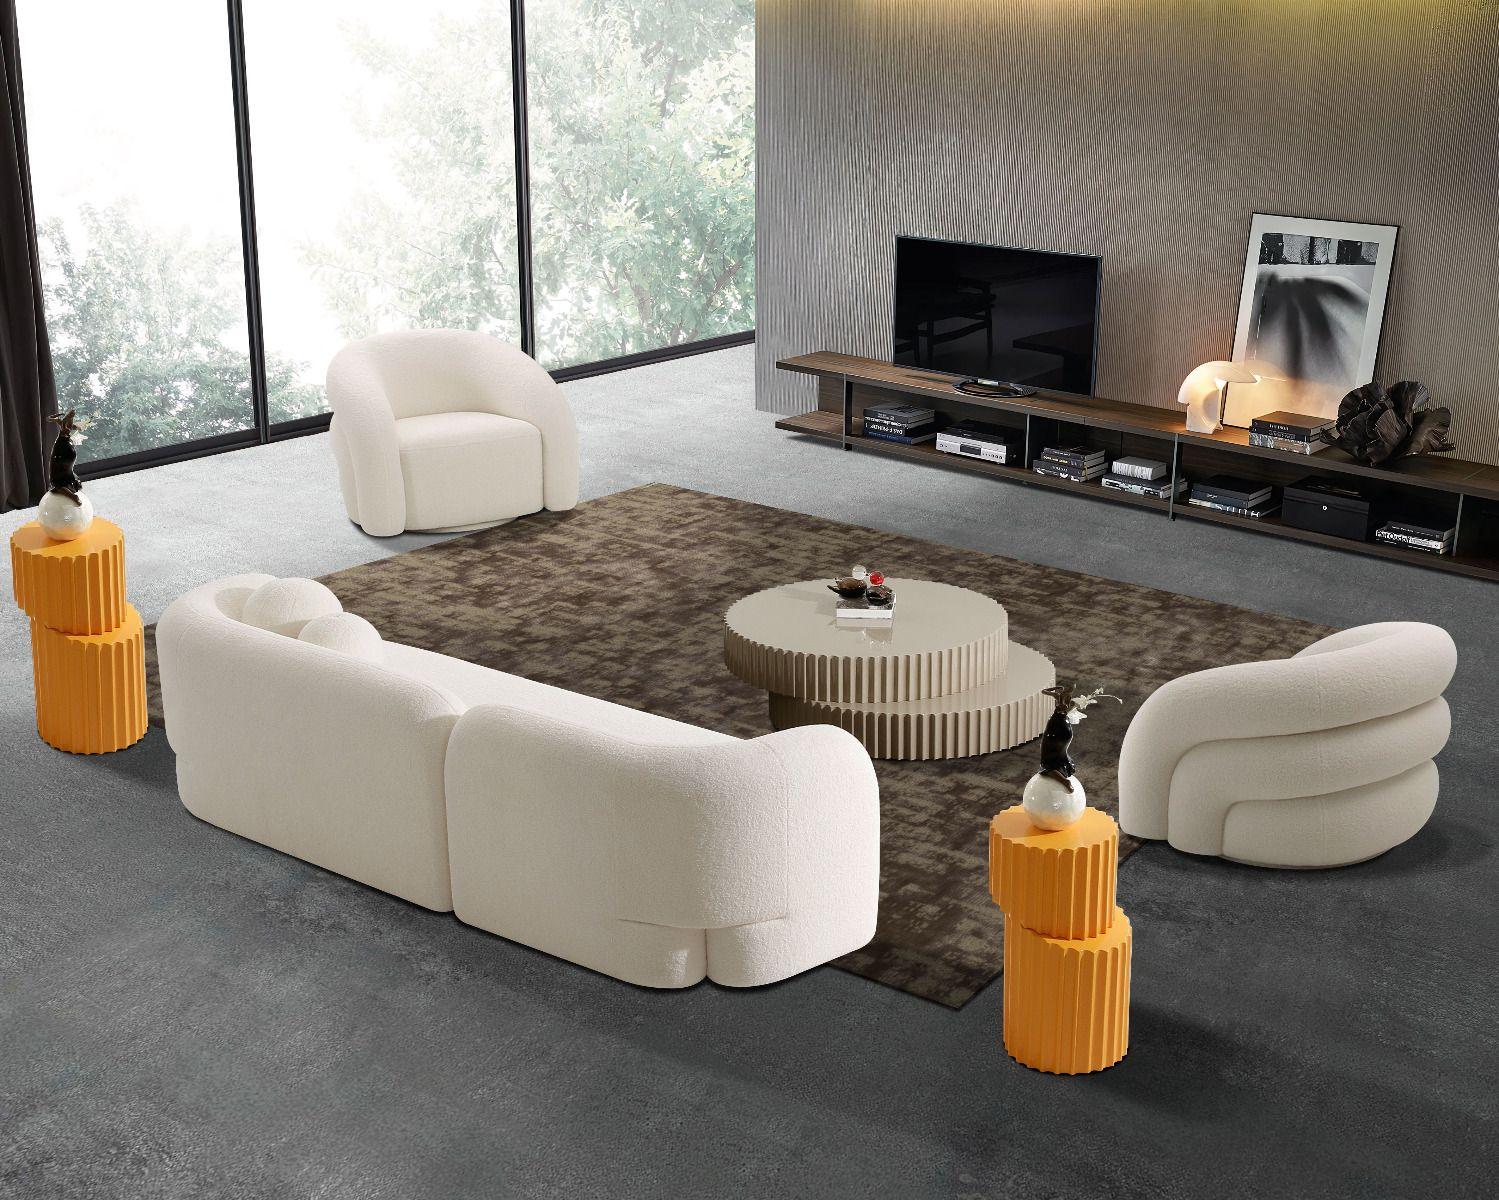 

    
Cream Fabric Extra Long Tufted Sofa Set 3Pcs AE3810-4S American Eagle
